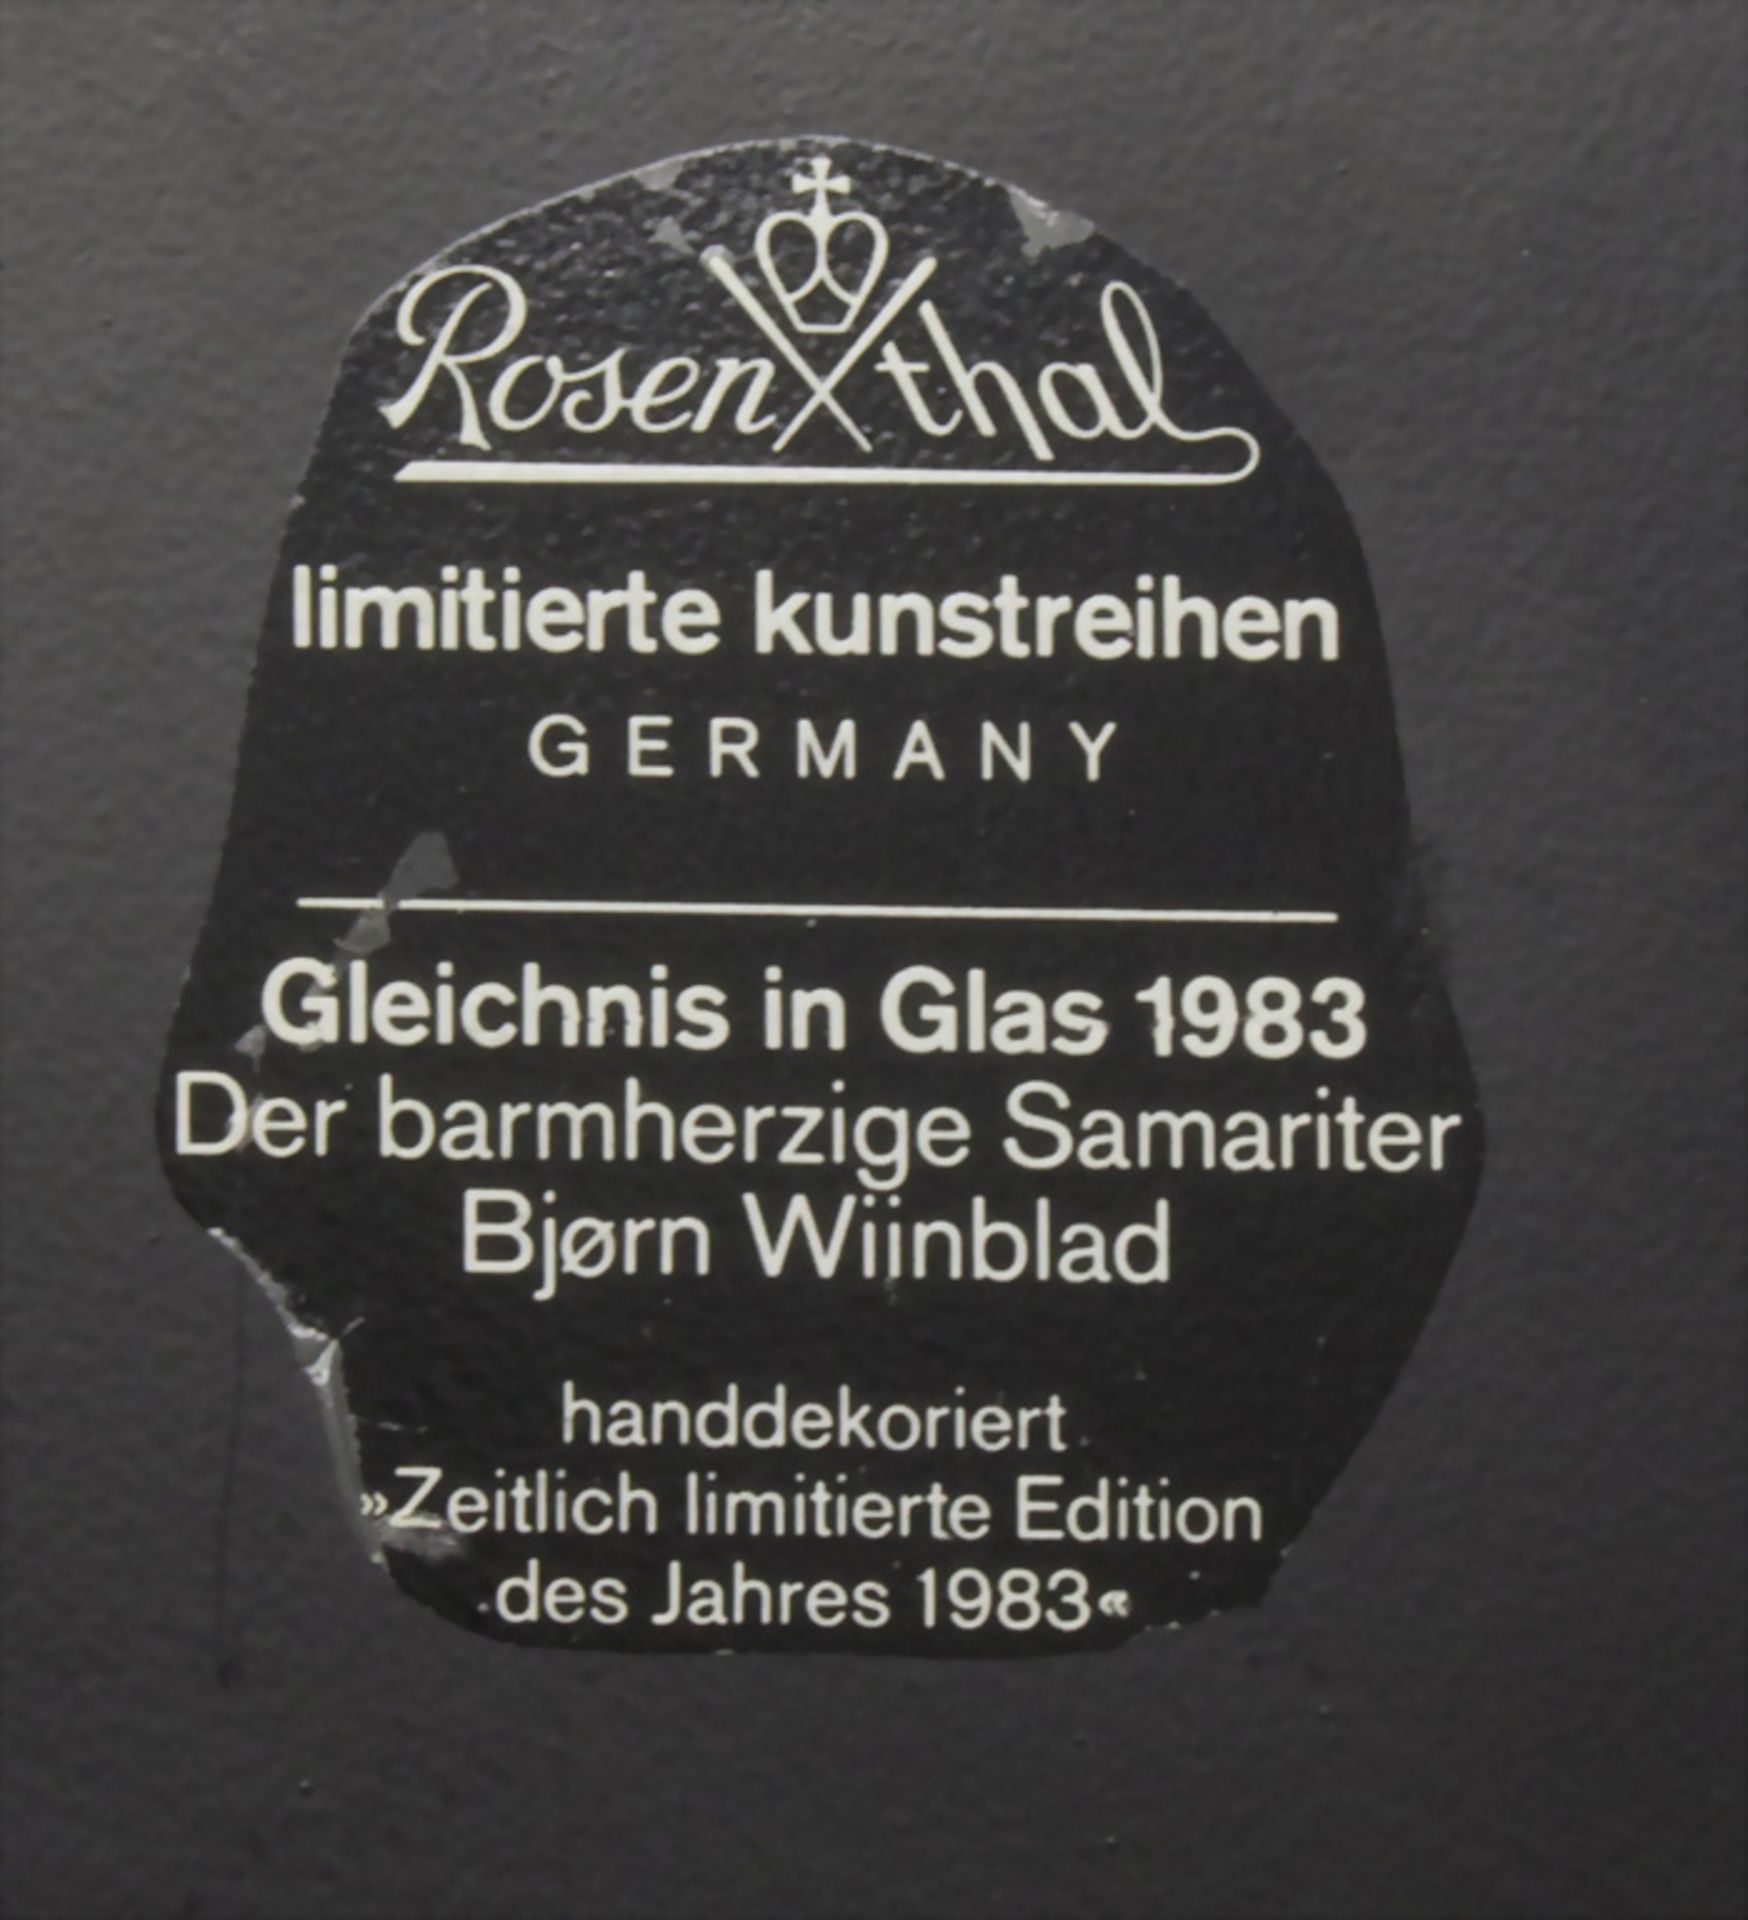 Björn Wiinblad, 'Der barmherzige Samariter', Wand-Kunstobjekt für Rosenthal, 1983 - Image 5 of 5